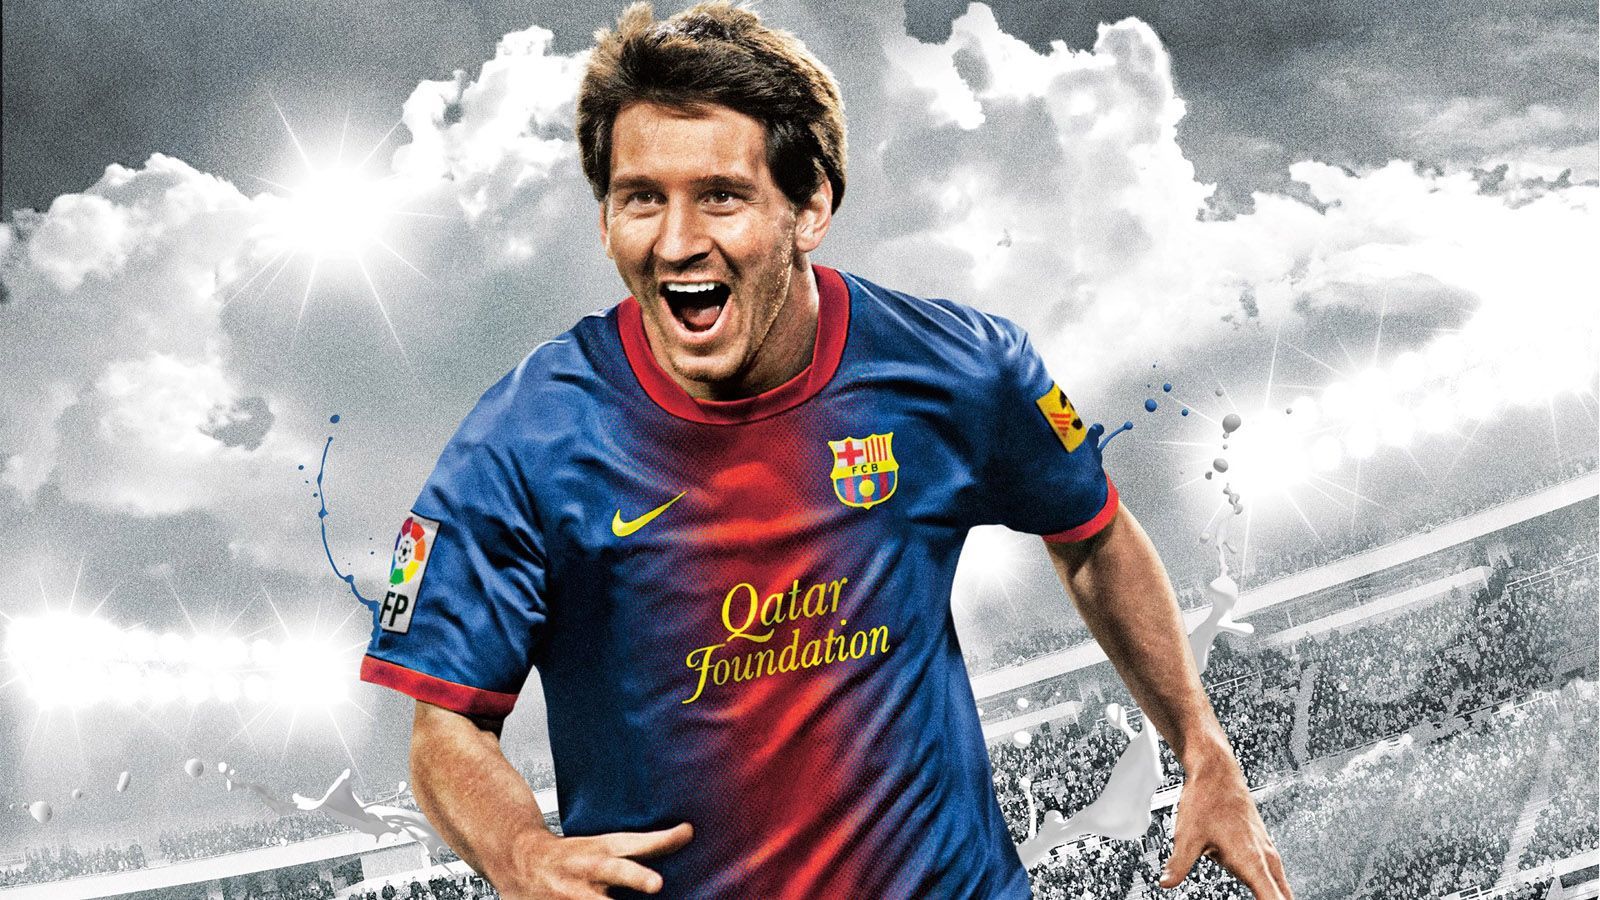 Lionel-Messi-Wallpaper-Dekstop-PC-Image.jpg